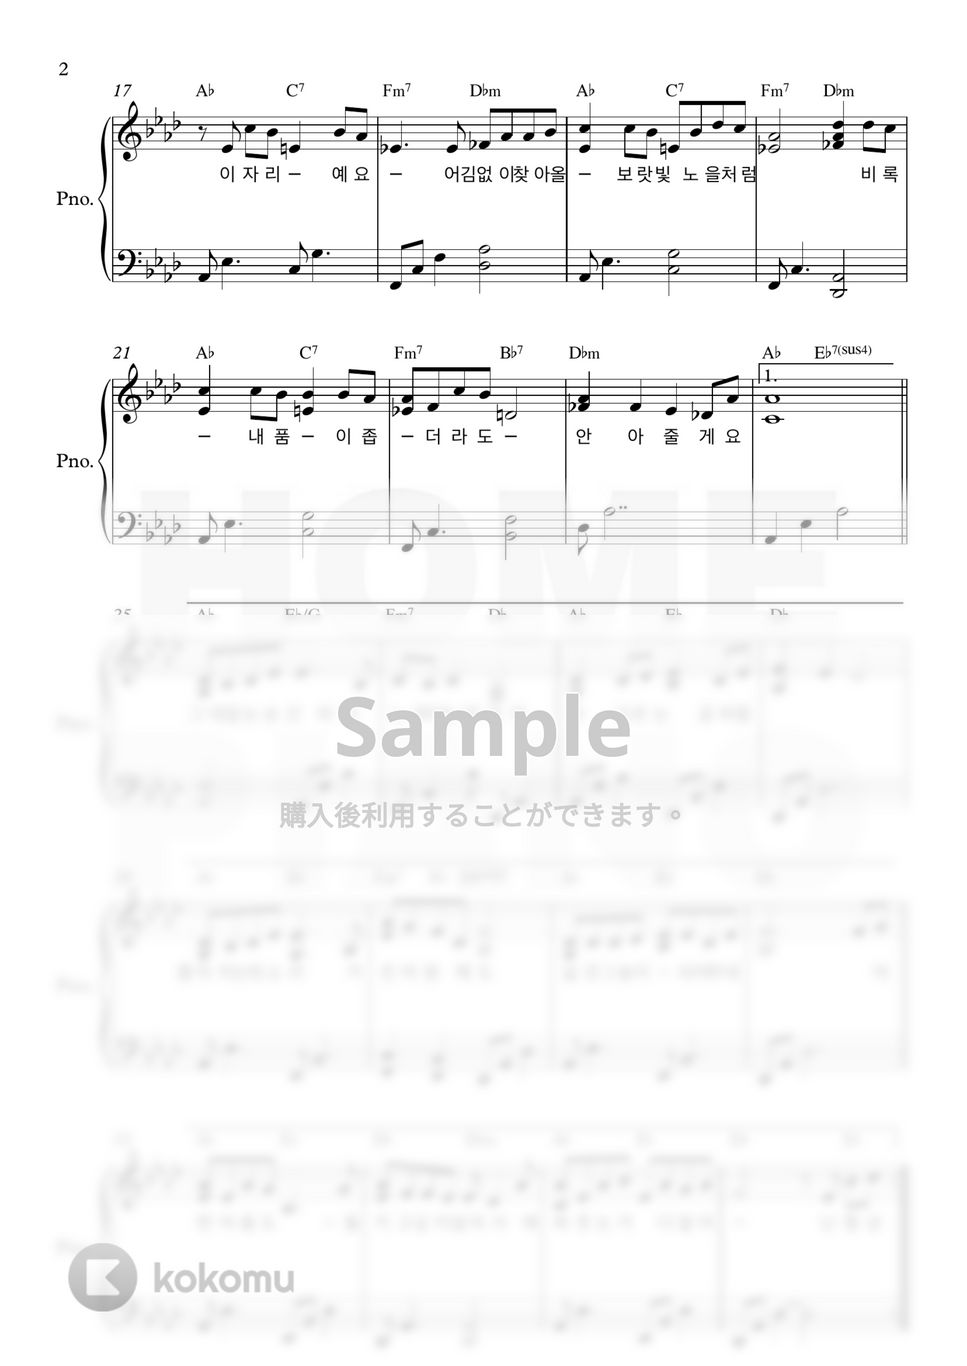 Davichi(愛の不時着 OST) - 夕焼け (中級) by HOME PIANO